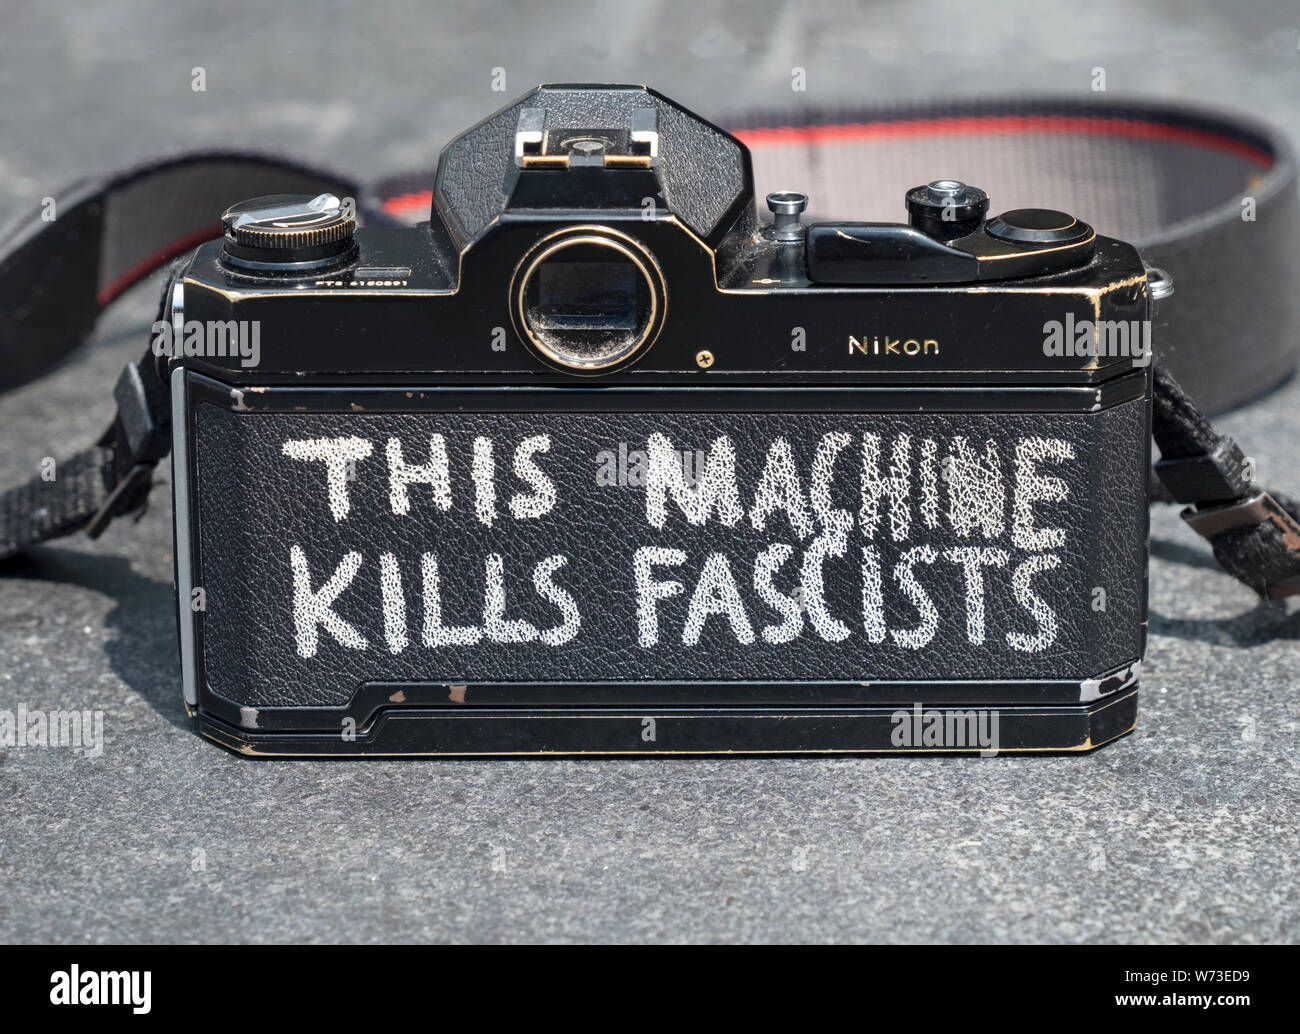 Questa macchina uccide i fascisti. Un fotografo dipinto di Woody Guthrie slogan sul retro della sua Nikon fotocamera a pellicola. In Washington Square Park di New York. Foto Stock